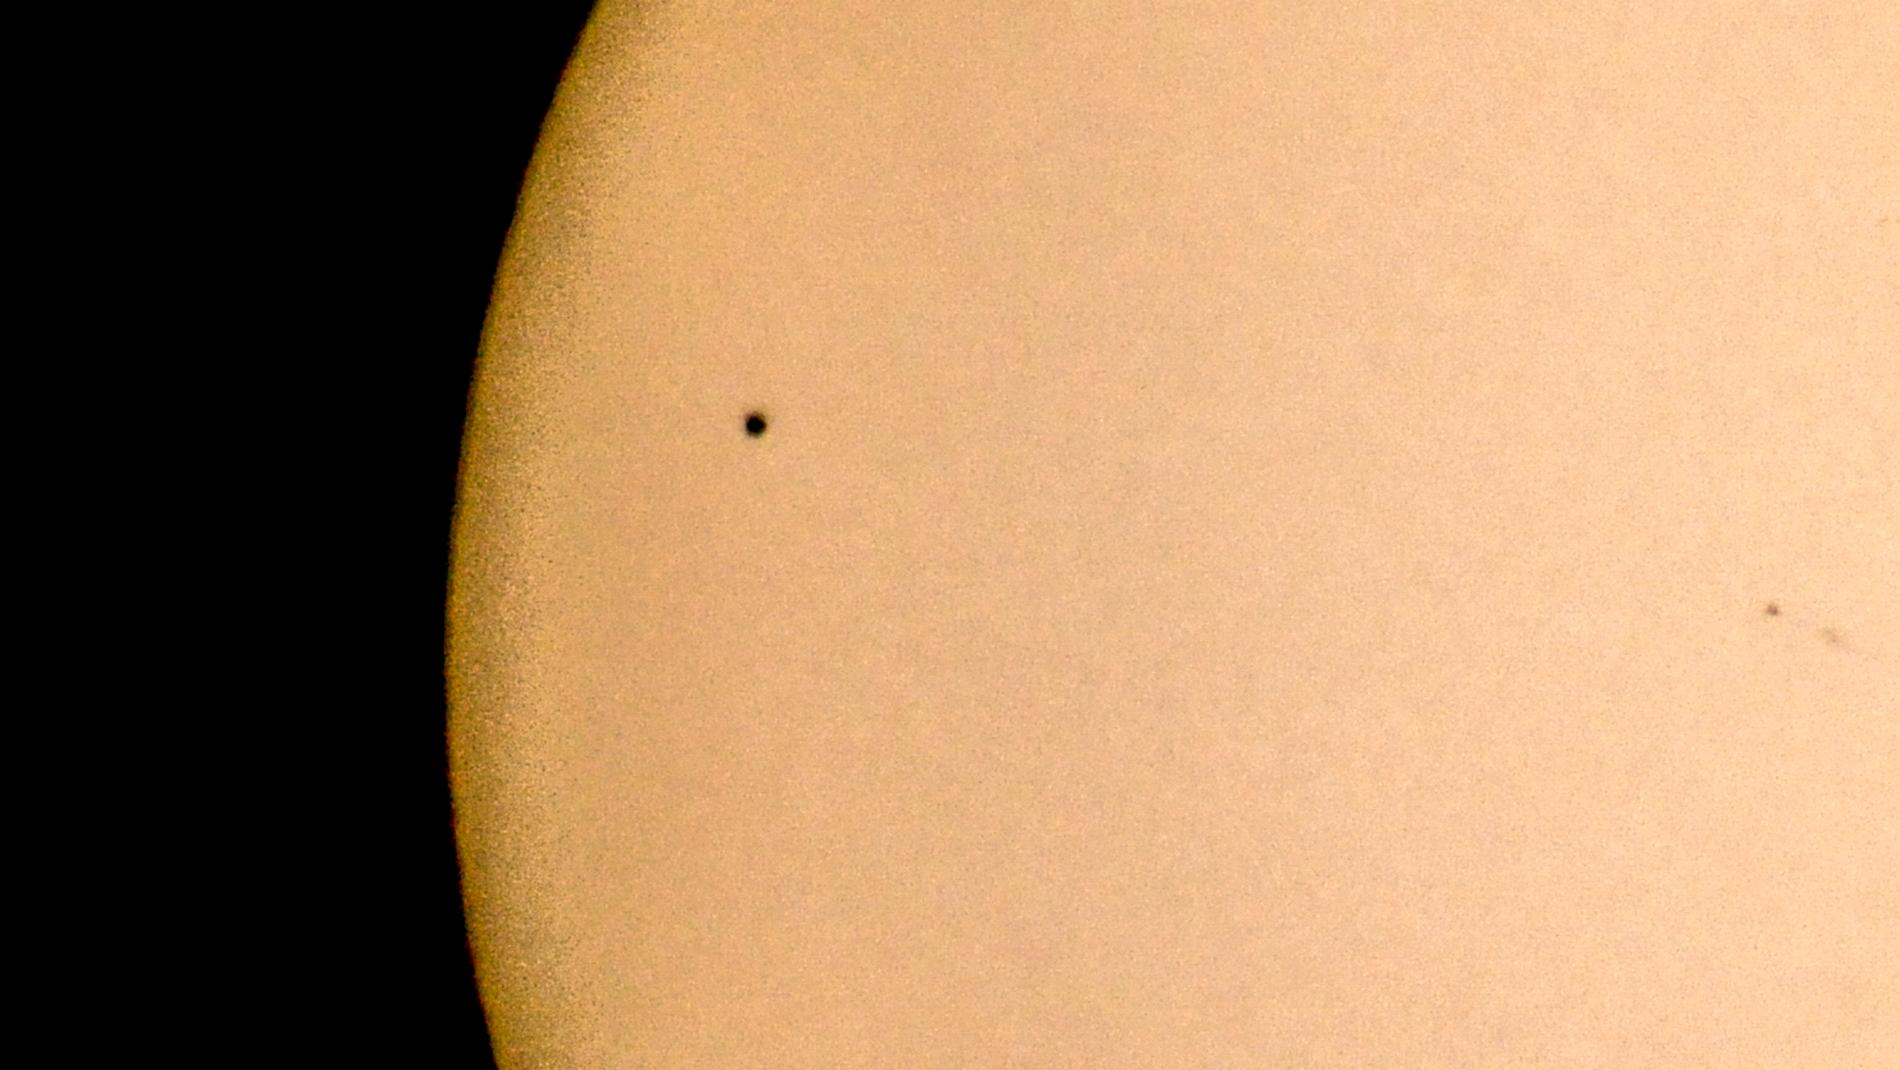 Planeten Merkurius som en svart prick på solen under den senaste Merkuriuspassagen den 9 maj 2016.